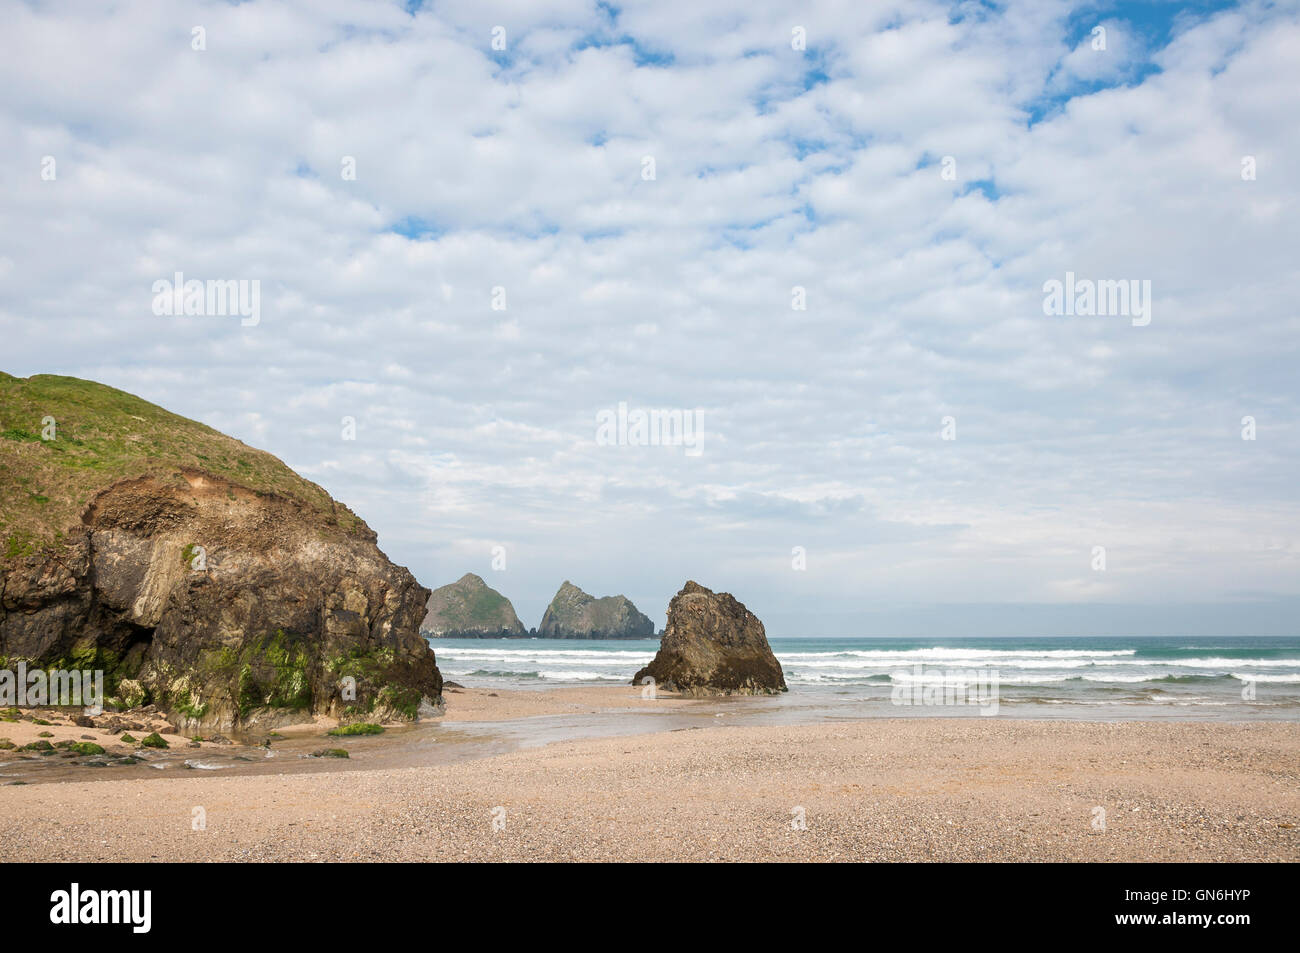 La plage de Baie de Holywell, sur la côte de Cornouailles, Angleterre. Vue donnant sur la mer et les rochers connu sous le nom de roches de goélands. Banque D'Images